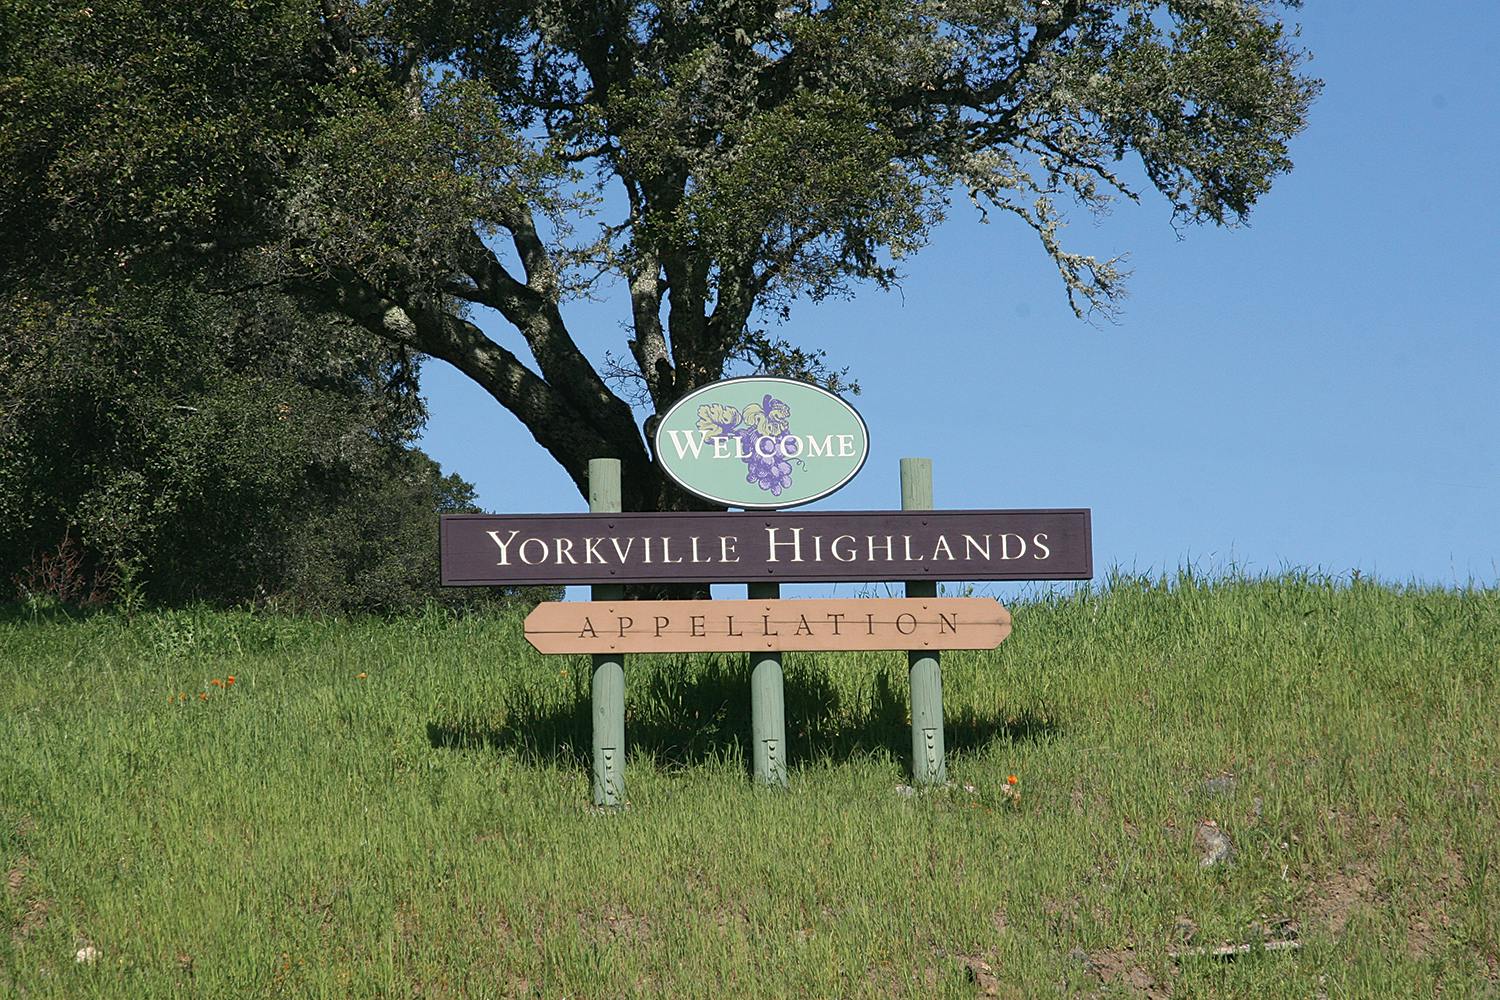 Yorkville Highlands Appellation